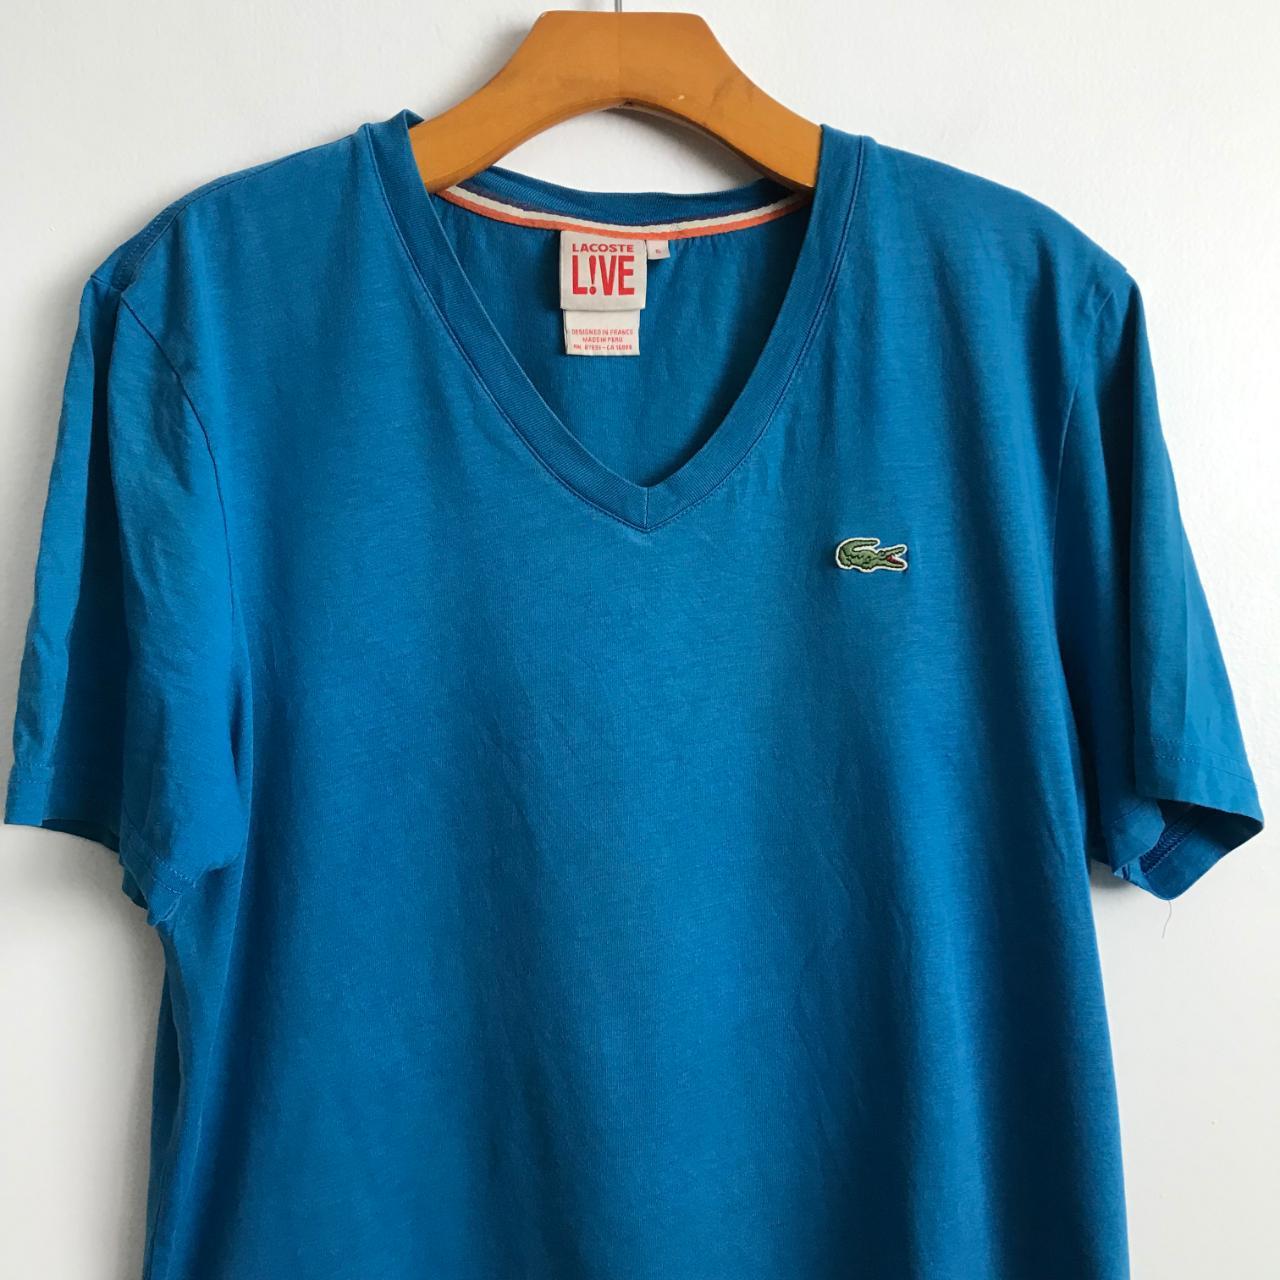 Lacoste Live Men's Blue T-shirt (2)